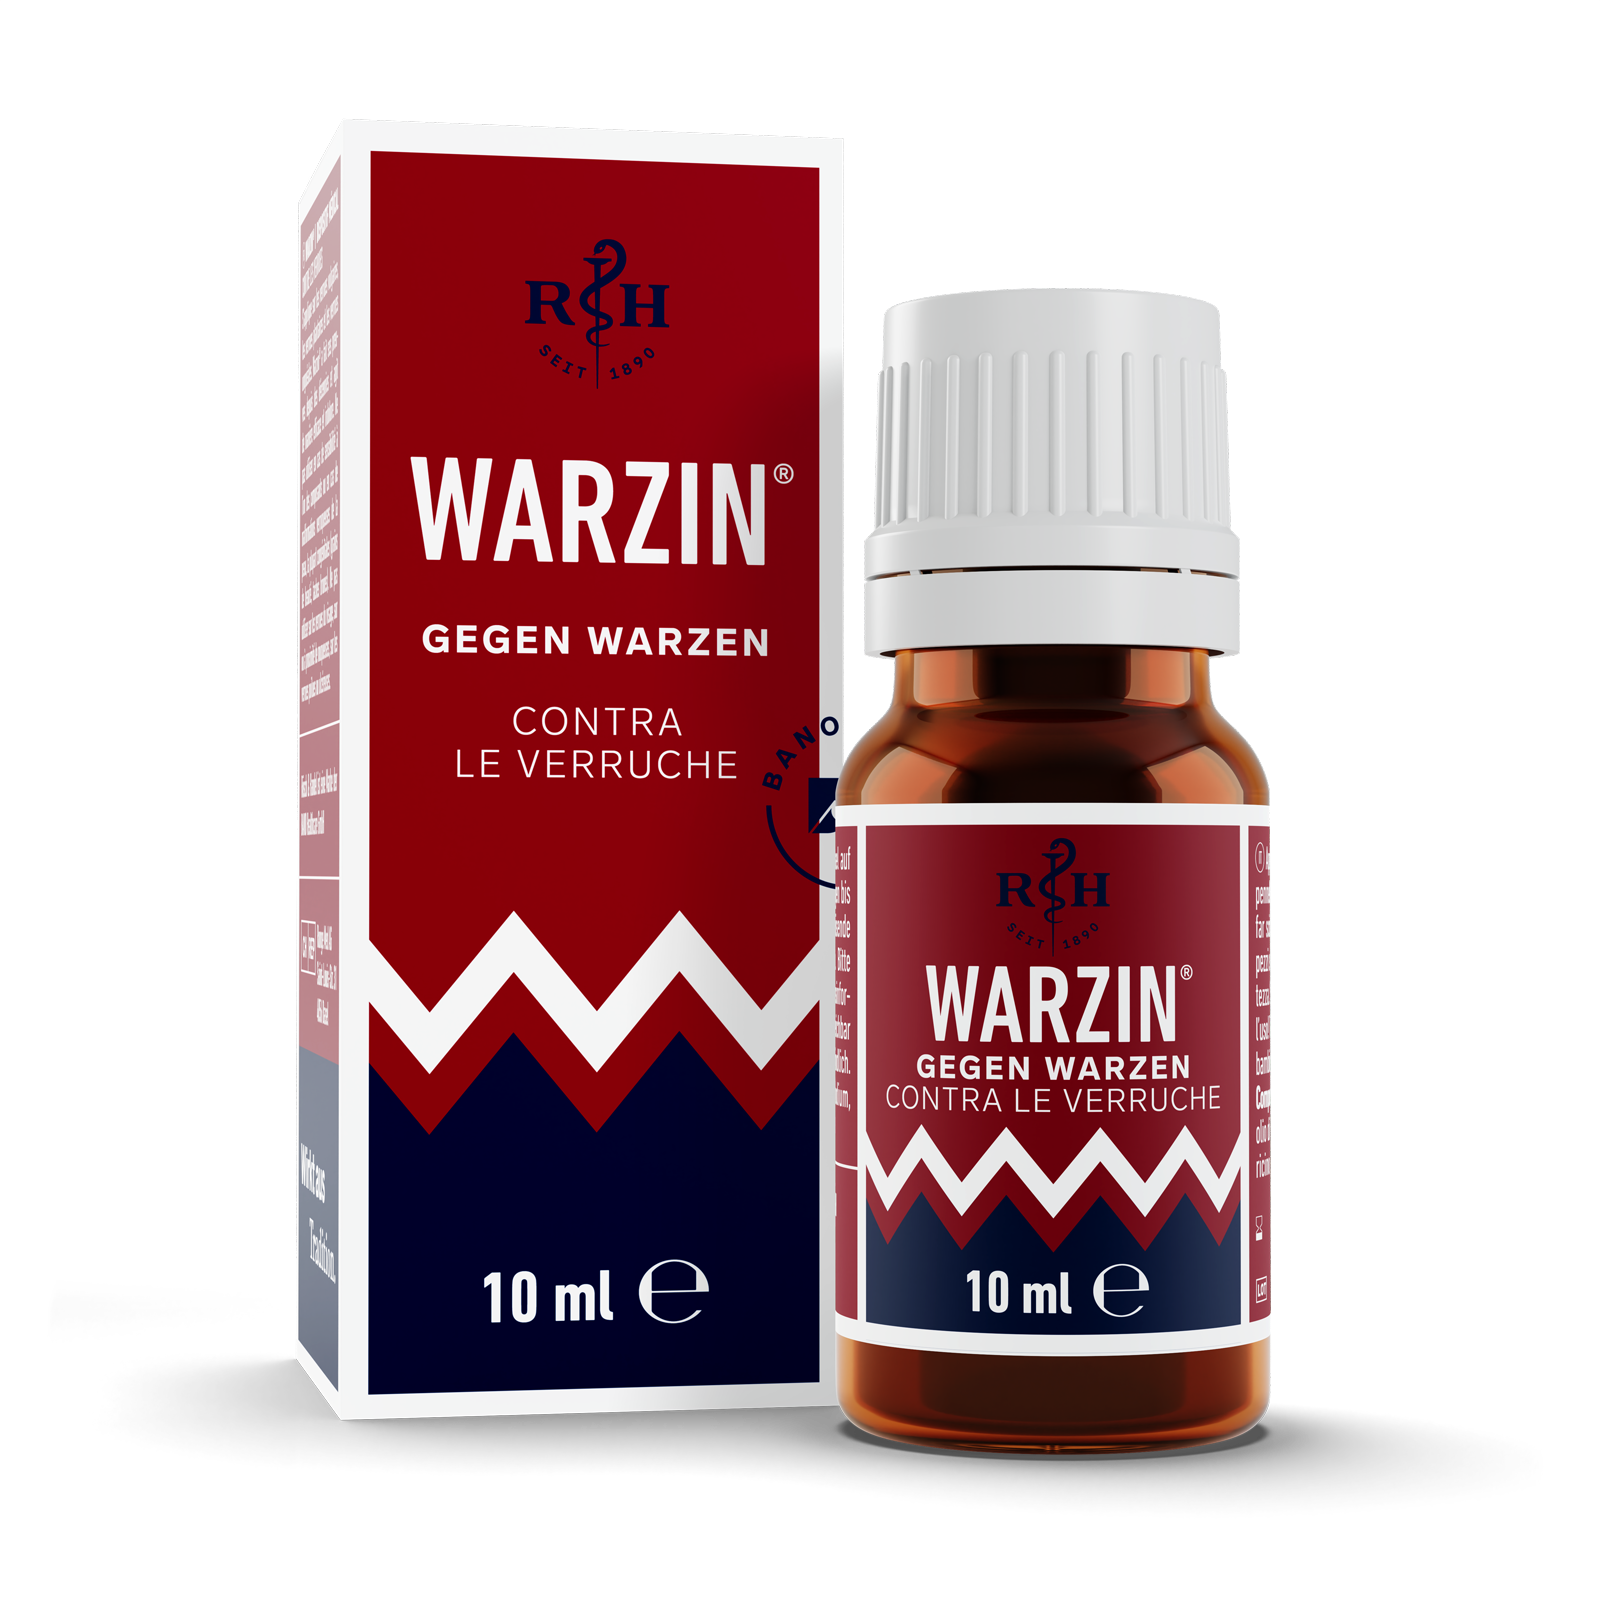 Warzin against warts